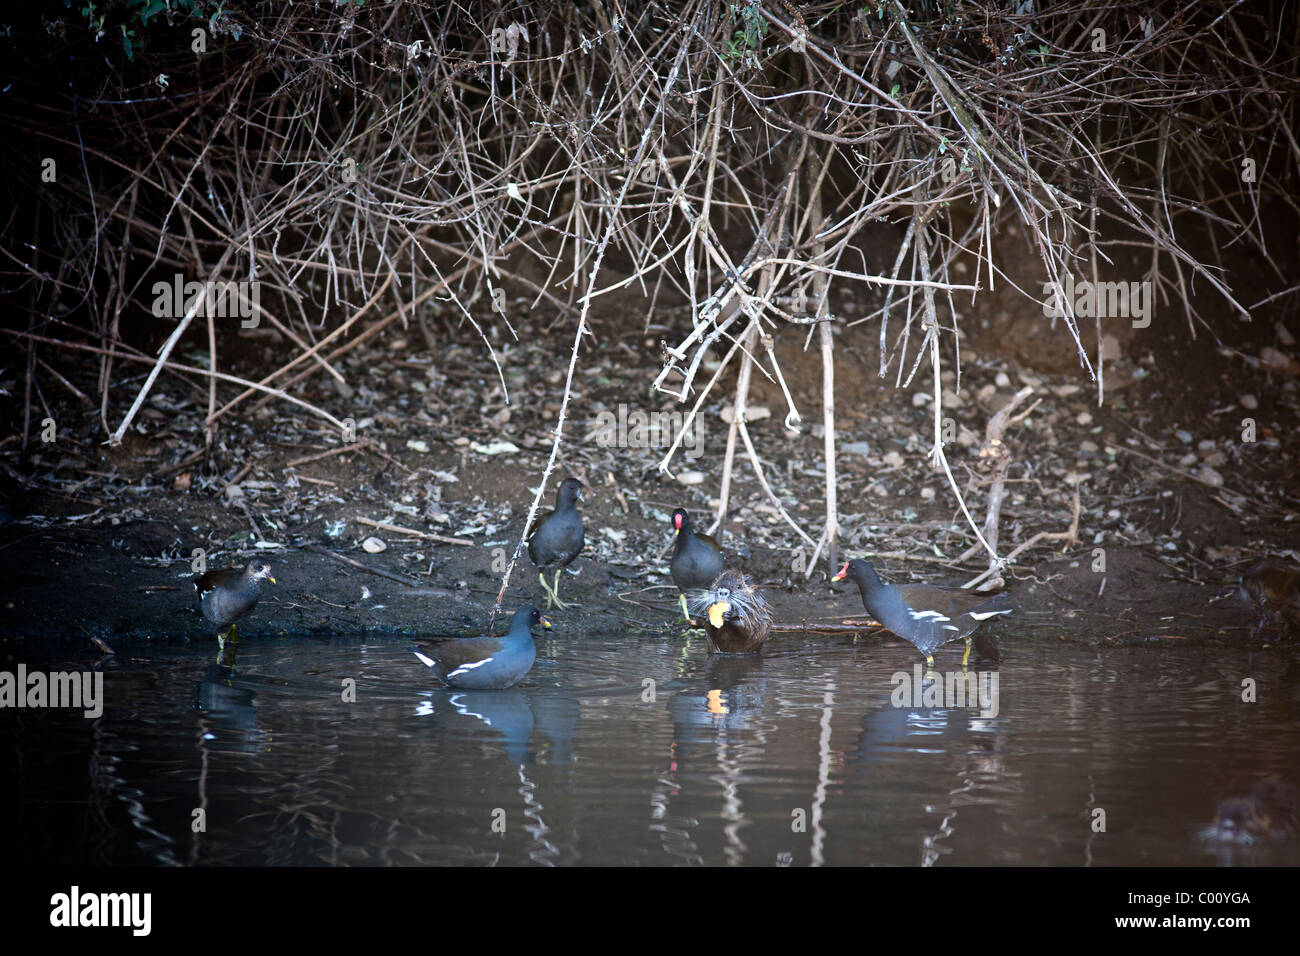 Un coypu con comuni gallinelle d'acqua su un fiume Allier bank (Francia). Ragondin et Gallinules poules d'eau sur une berge de l'Allier. Foto Stock